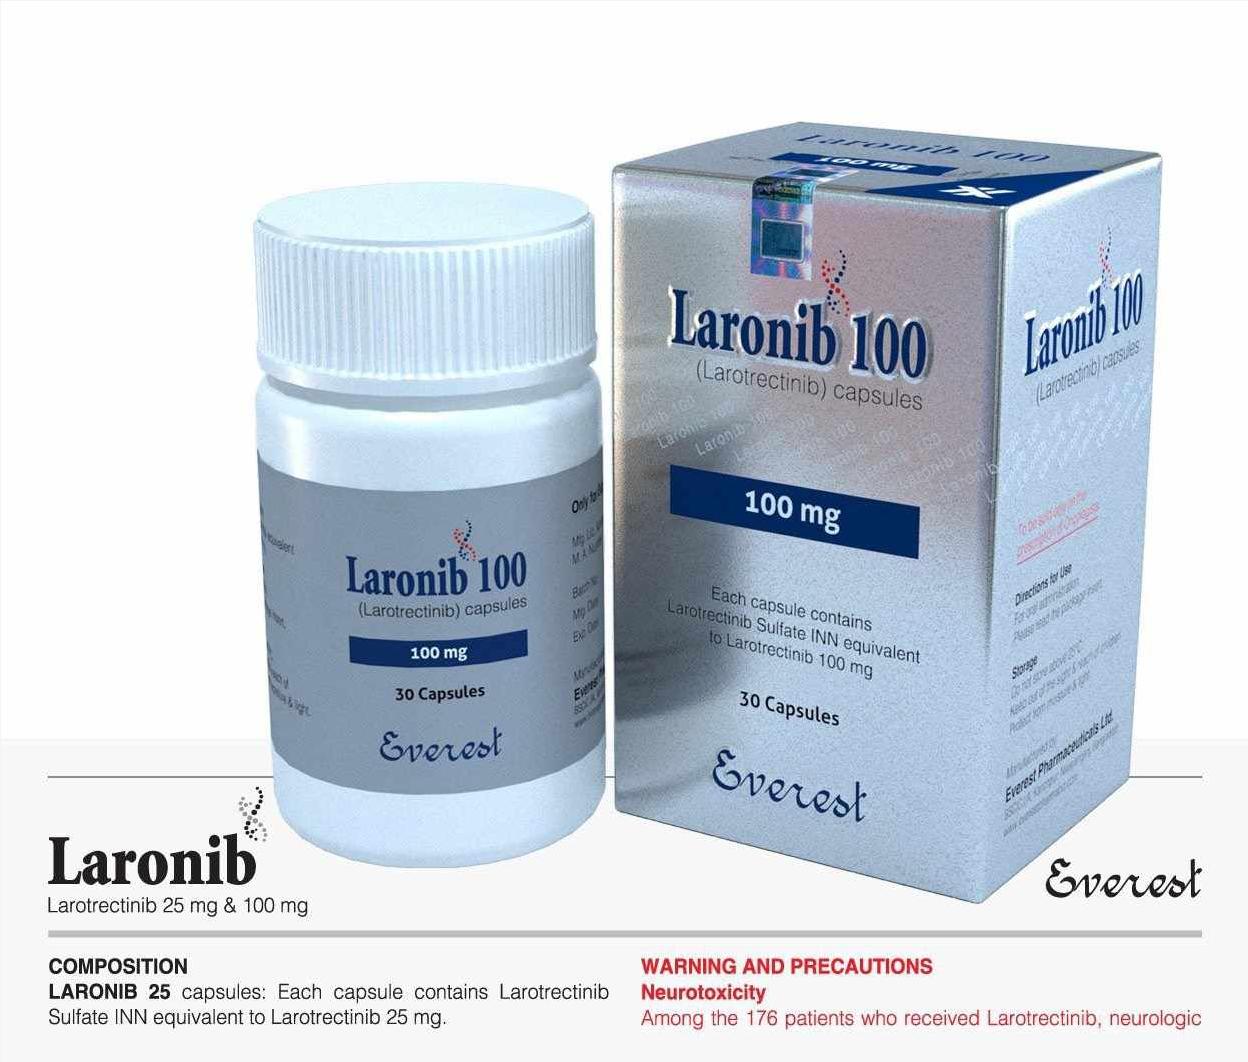 Thuốc Laronib 100 Larotrectinib giá bao nhiêu mua ở đâu?